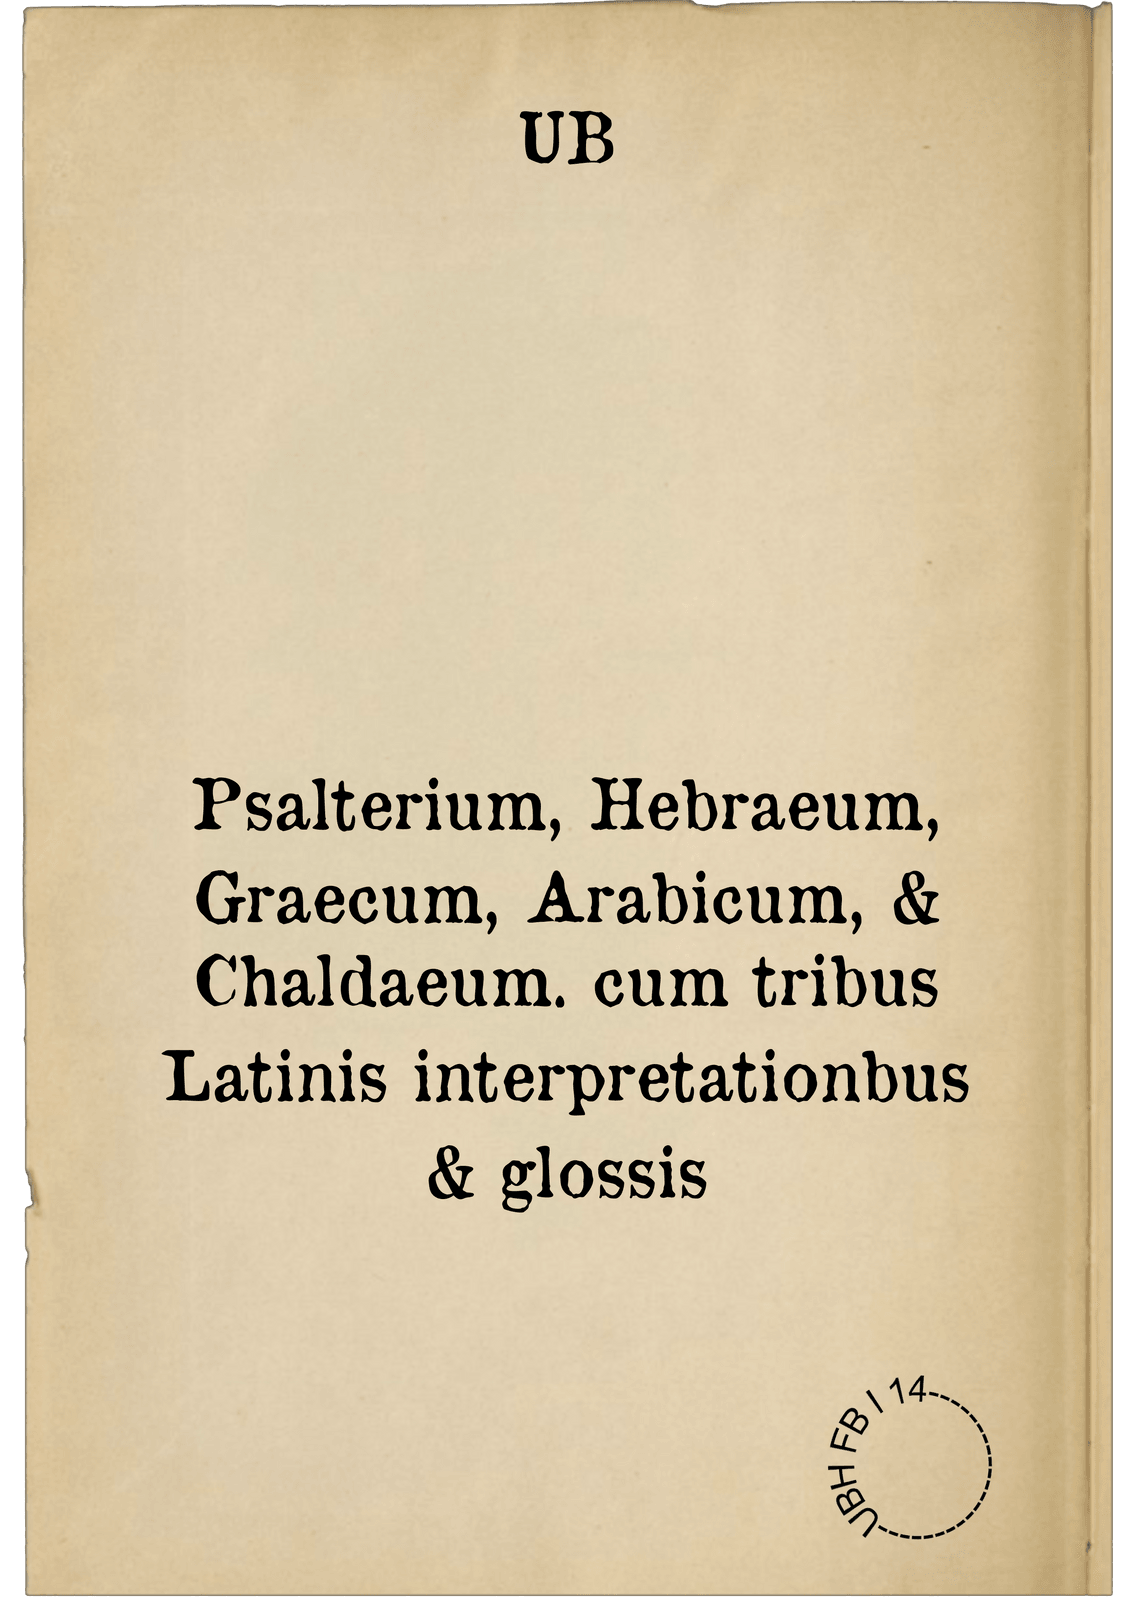 Psalterium, Hebraeum, Graecum, Arabicum, & Chaldaeum. cum tribus Latinis interpretationbus & glossis